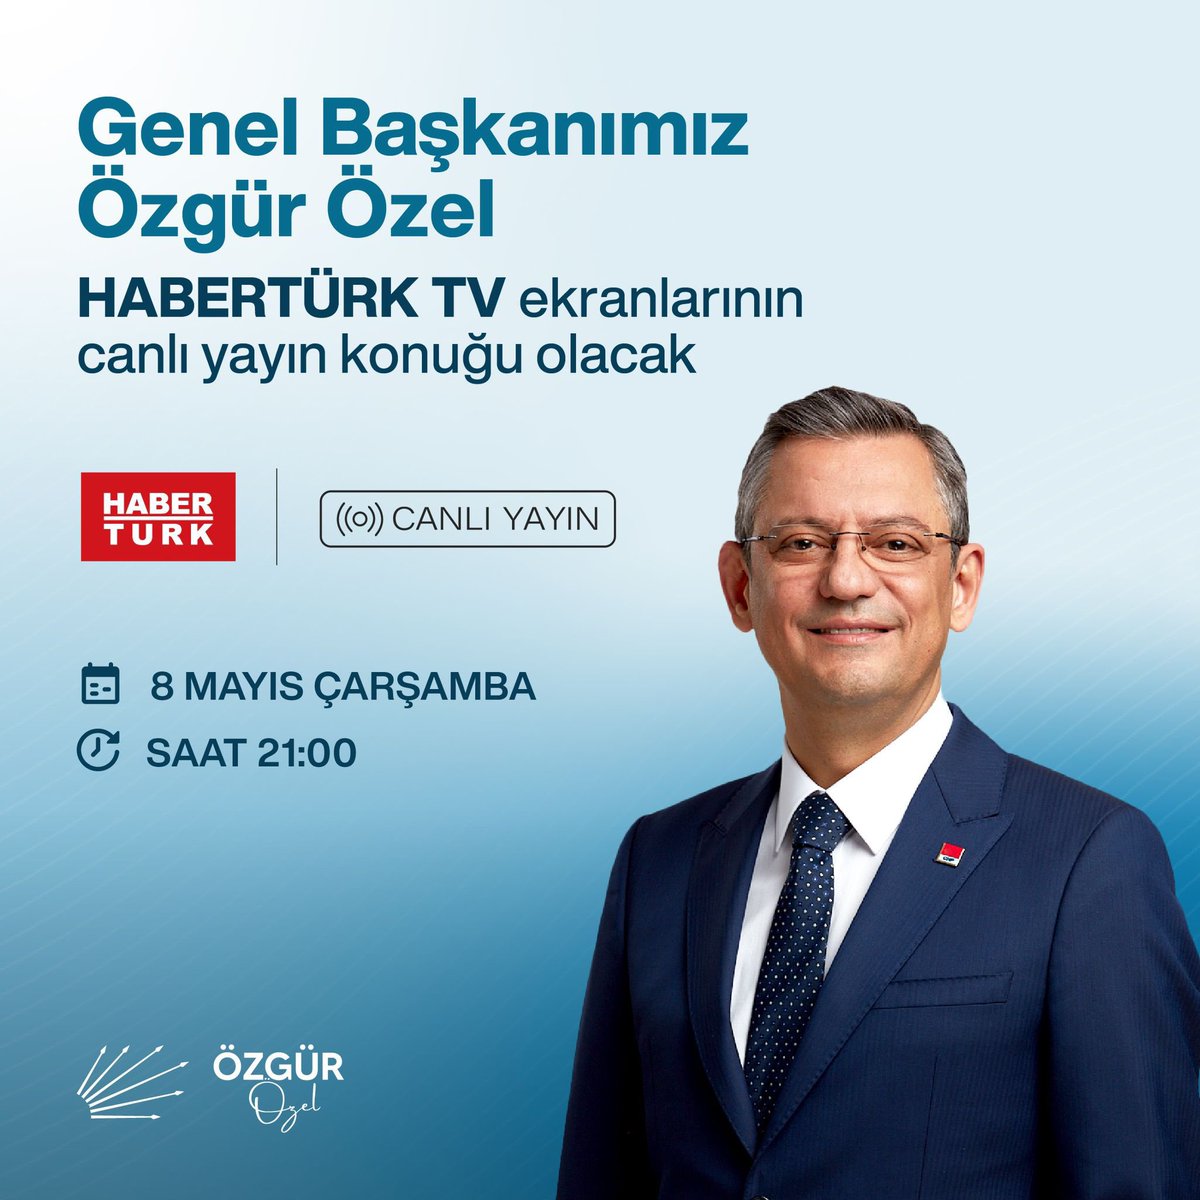 Genel Başkanımız Sayın Özgür Özel, bu akşam HaberTürk TV'de gazetecilerin sorularını yanıtlayacak. 🗓️8 Mayıs Çarşamba ⏰21.00